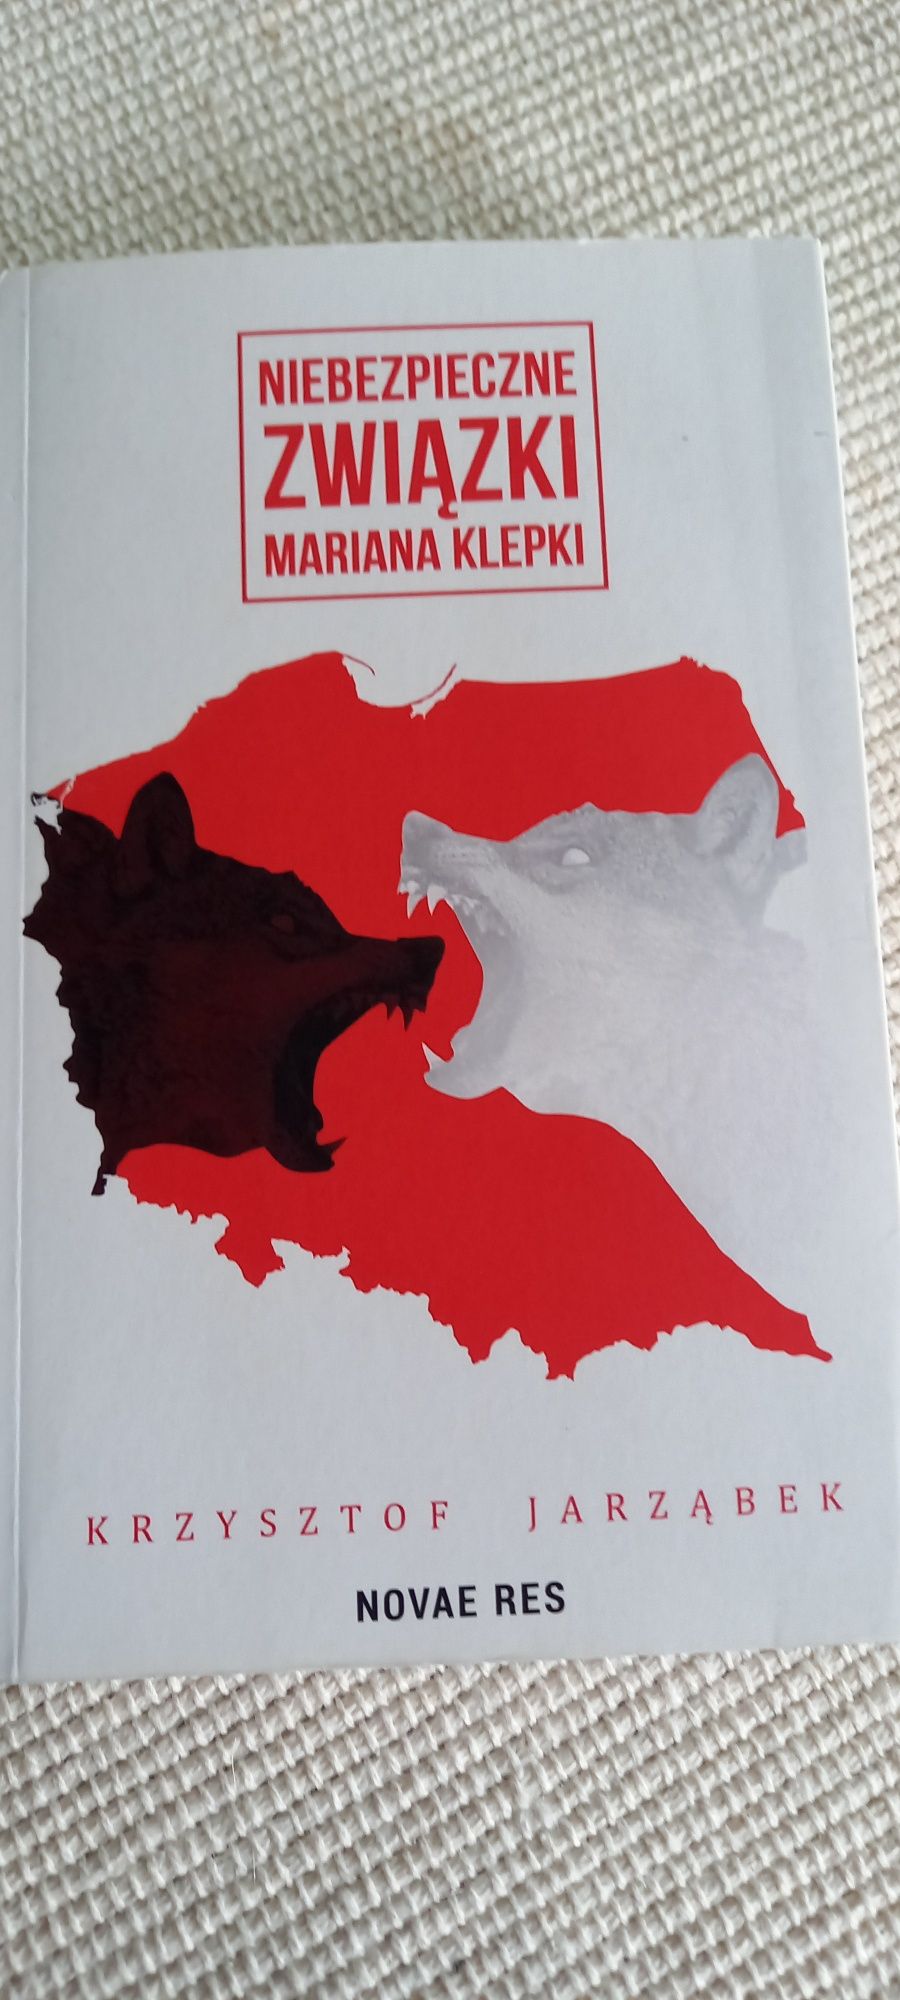 Książka " Niebezpieczne związki Mariana Klepki".